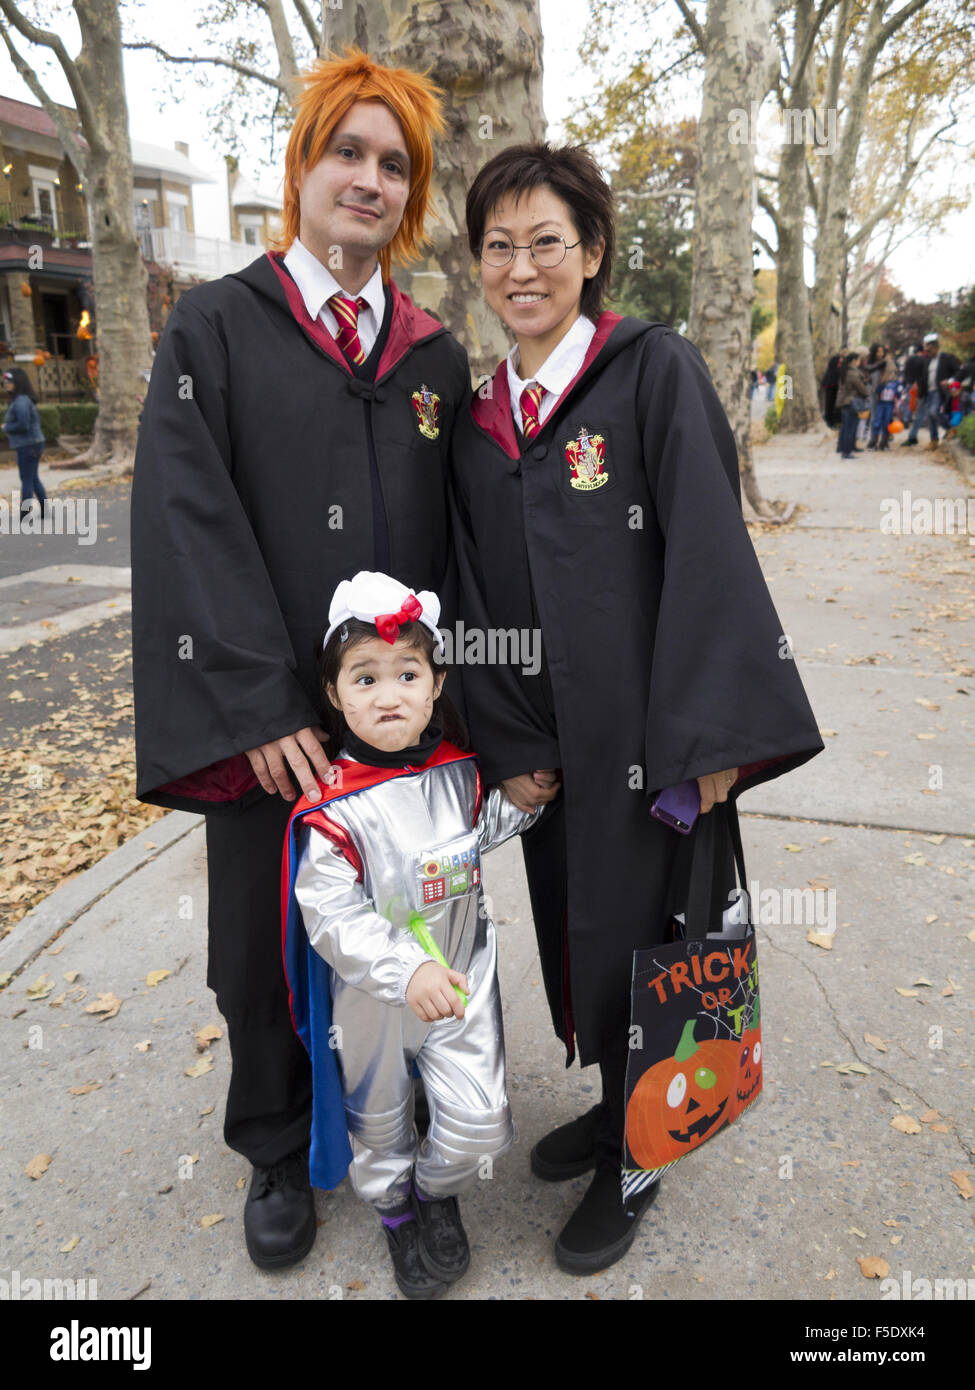 Famiglia trucco-o-trattare n la sezione di Kensington di Brooklyn, New  York, 2015. I genitori vestiti come personaggi di Harry Potter Foto stock -  Alamy